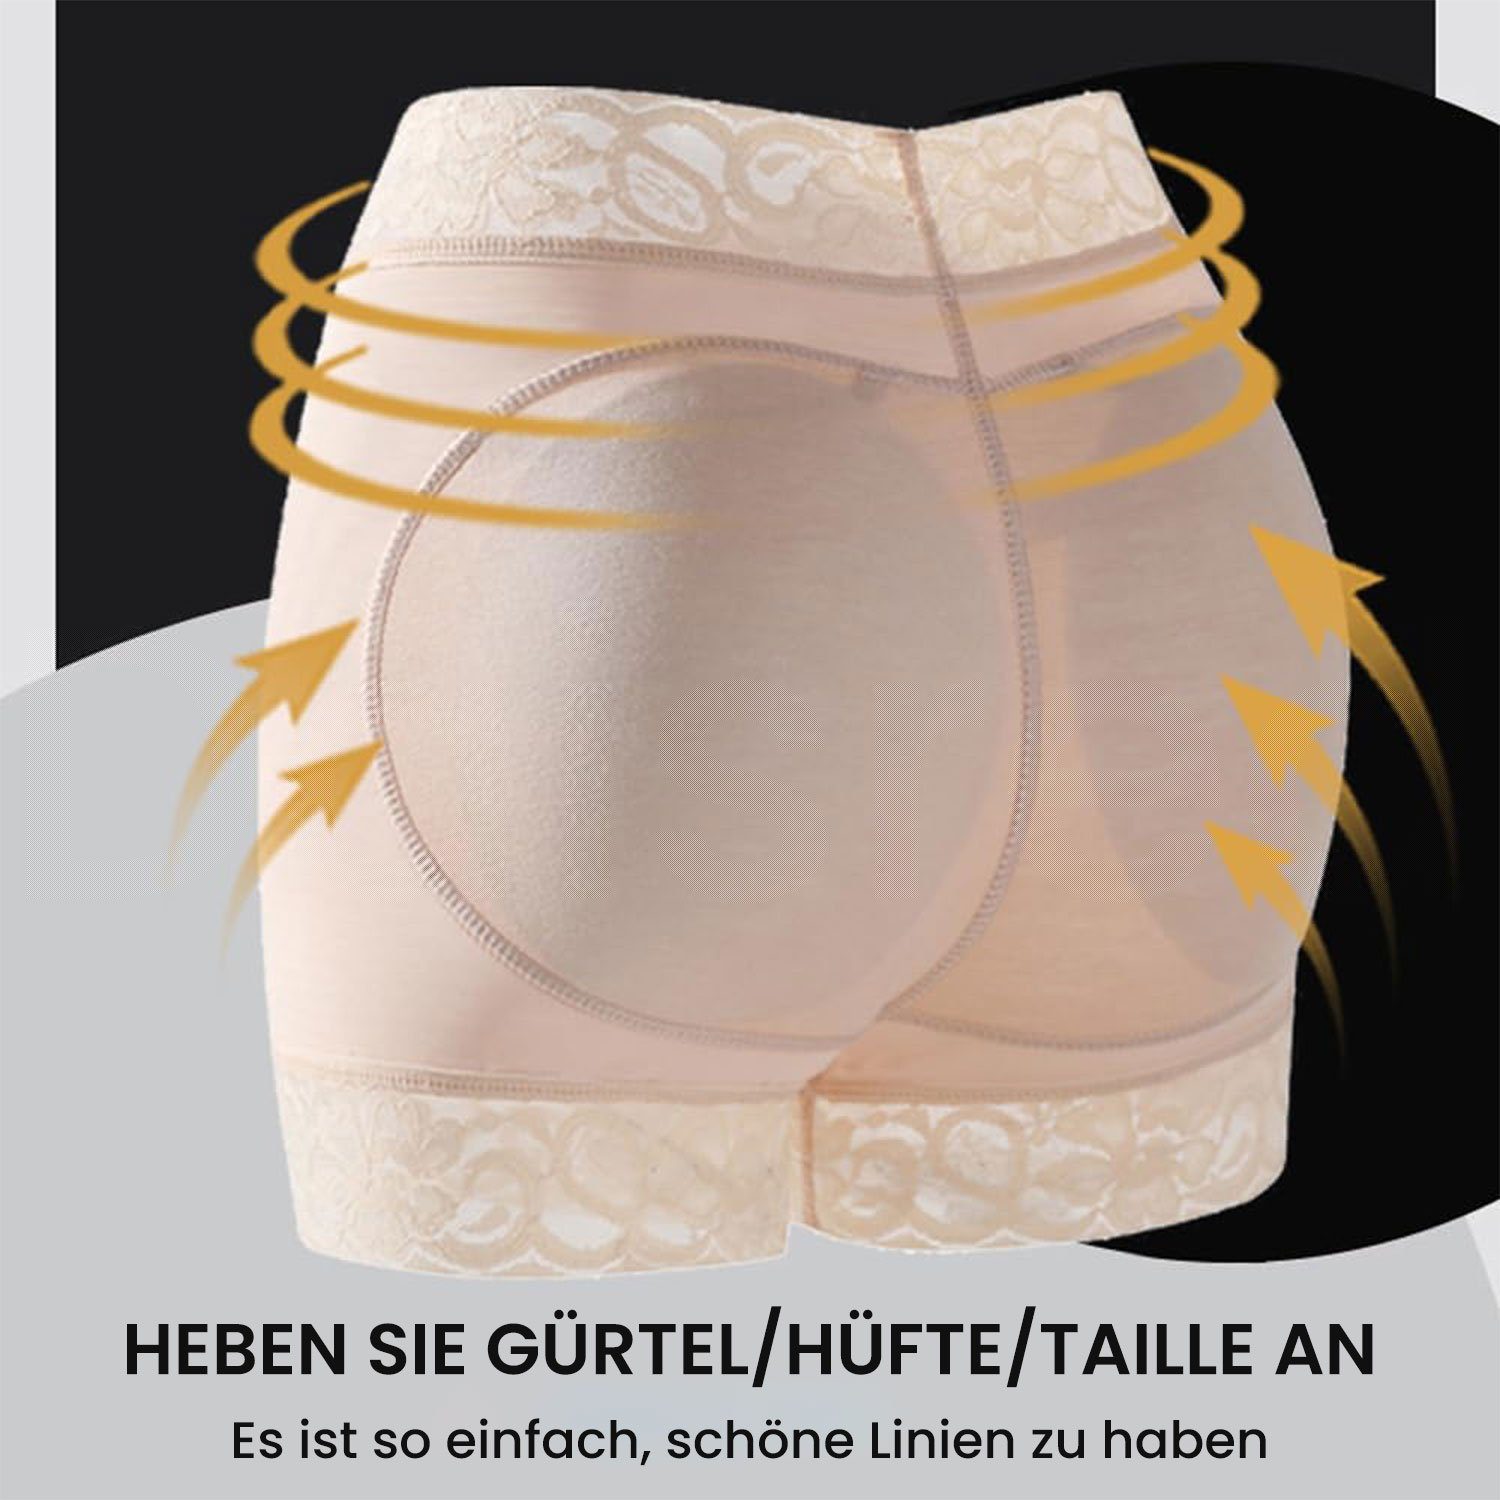 HöSchen Hüfte Enhancers Ass Schwarz Butt Daisred Shapingslip Lifter Fake Damen